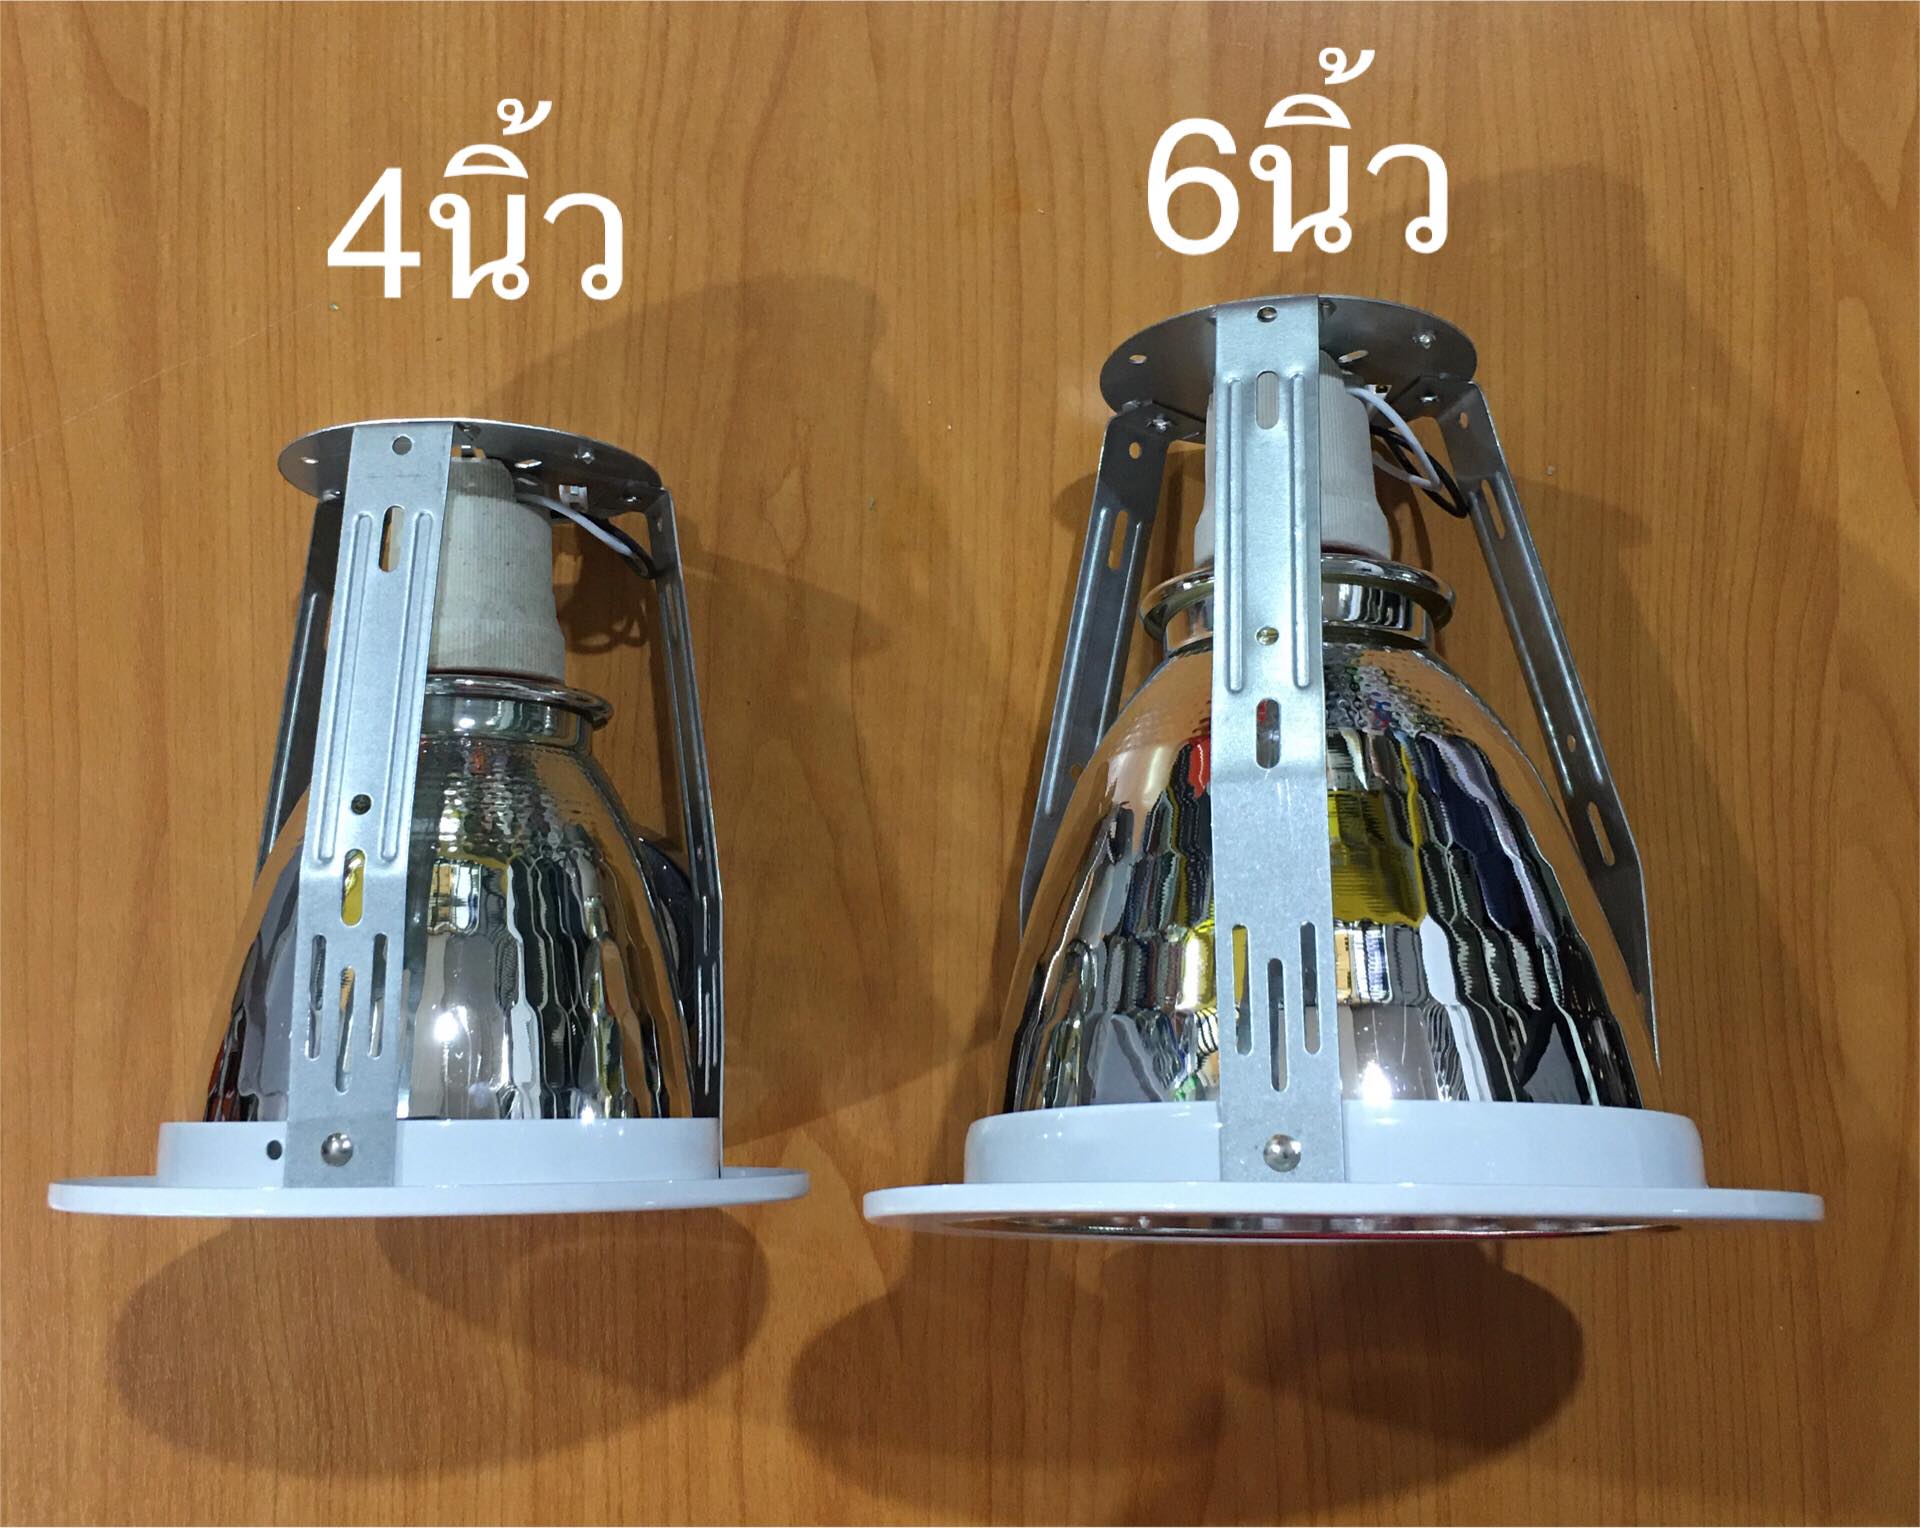 รายละเอียดเพิ่มเติมเกี่ยวกับ L&E โคมไฟฝังฝ้า 6นิ้ว พร้อมหลอด LED 13W เดยไลท์ วอร์มไวท์ และ หลอดหรี่ไฟ ขอบขาว โคมดาวน์ไลท์ ดาวไลท์ โคมฝัง LED จัดส่งKerry